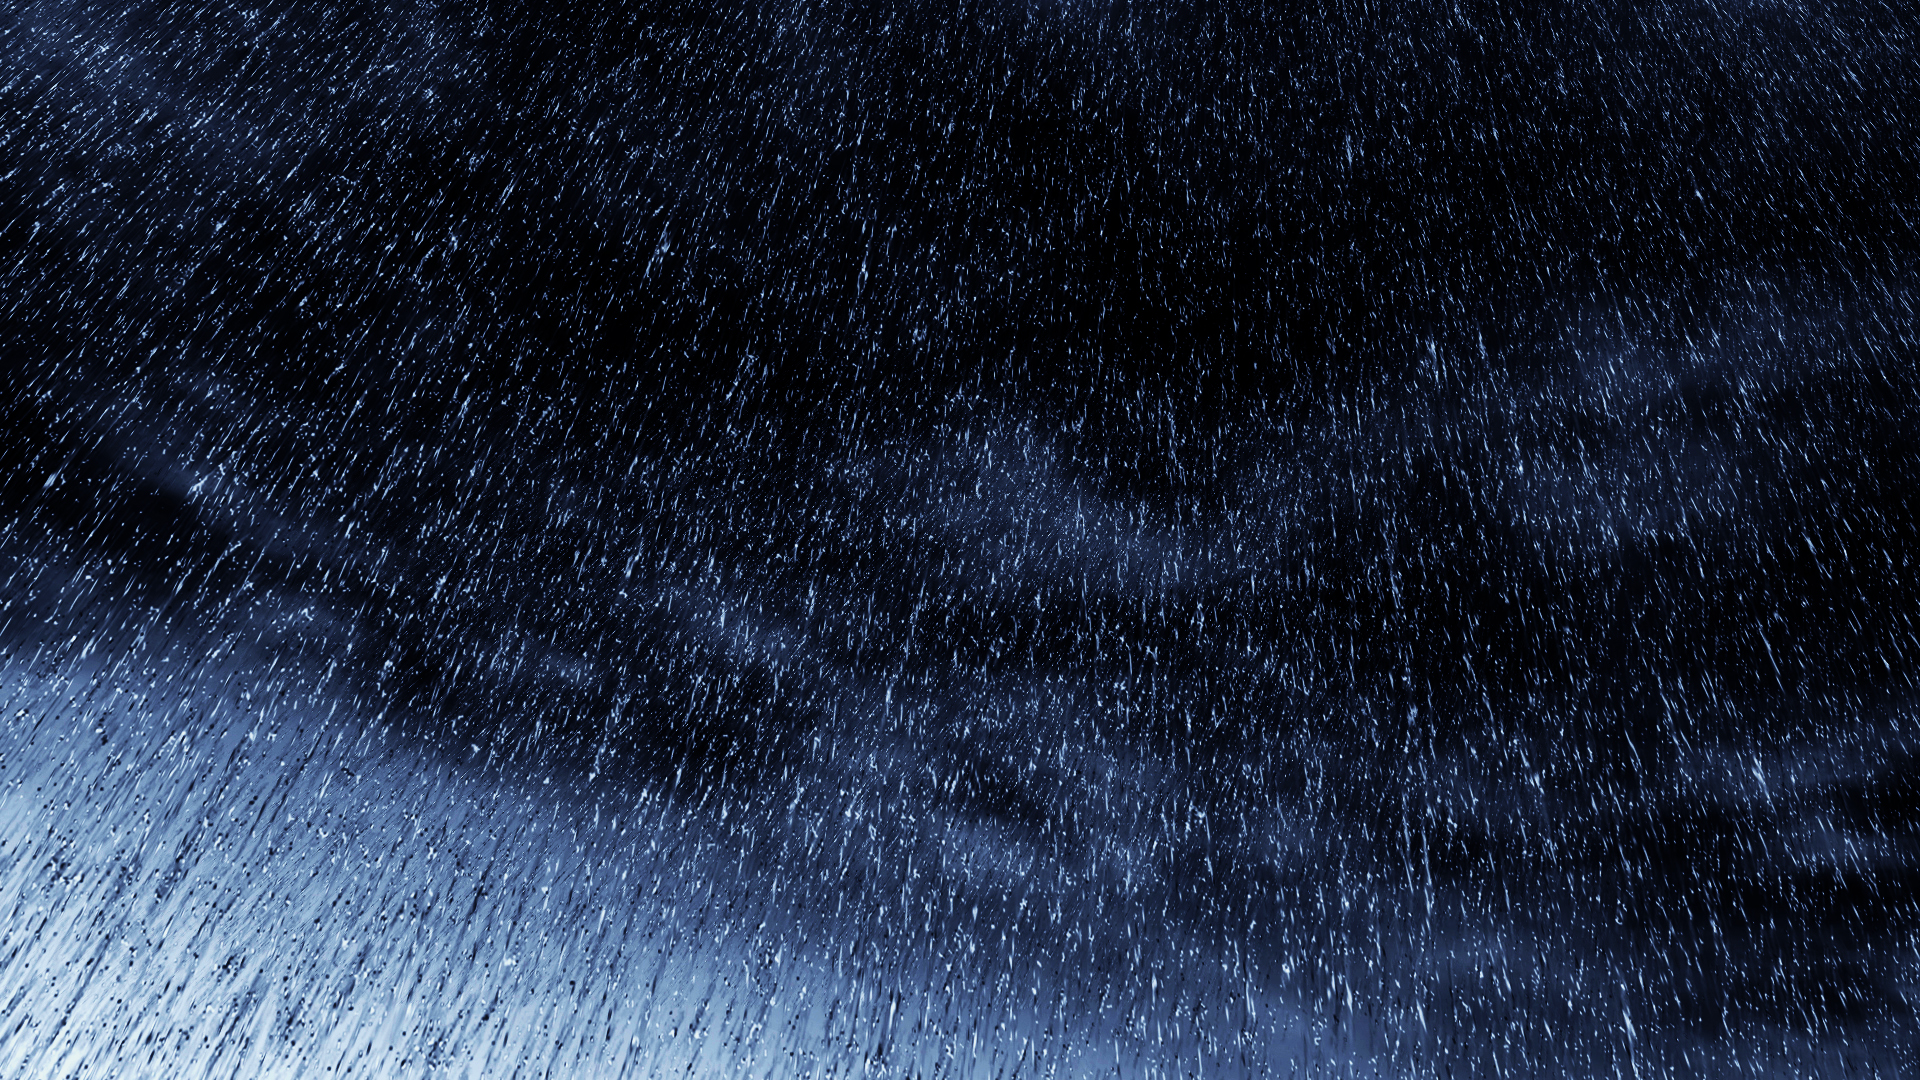 Artistic Rain Wallpaper Image